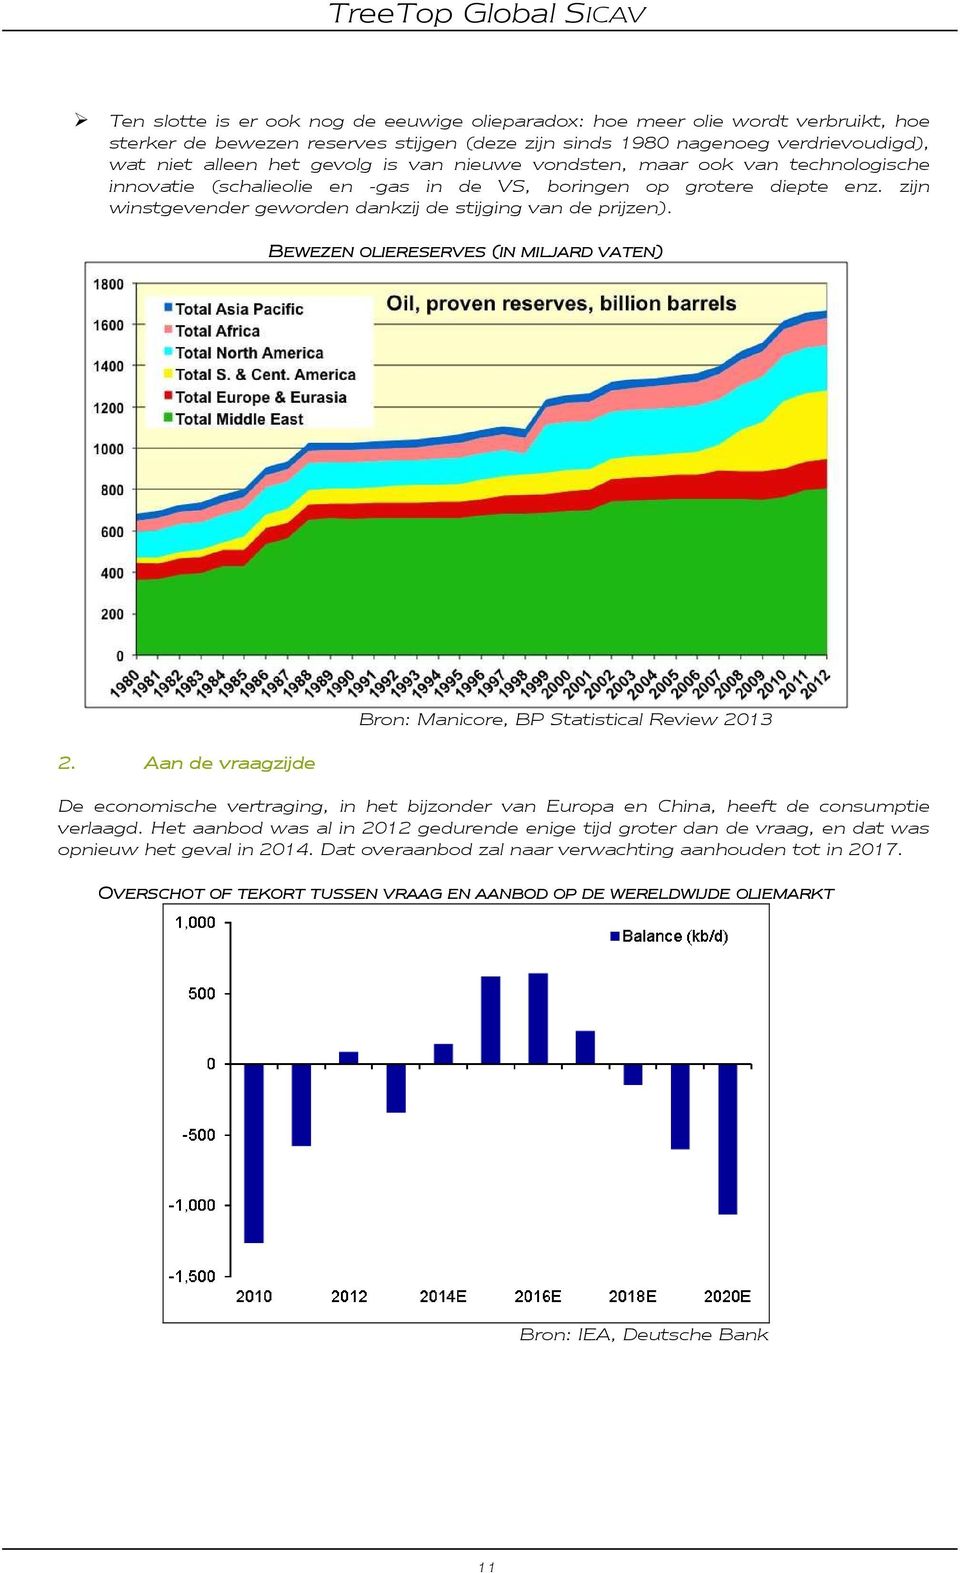 BEWEZEN OLIERESERVES (IN MILJARD VATEN) 2. Aan de vraagzijde Bron: Manicore, BP Statistical Review 2013 De economische vertraging, in het bijzonder van Europa en China, heeft de consumptie verlaagd.